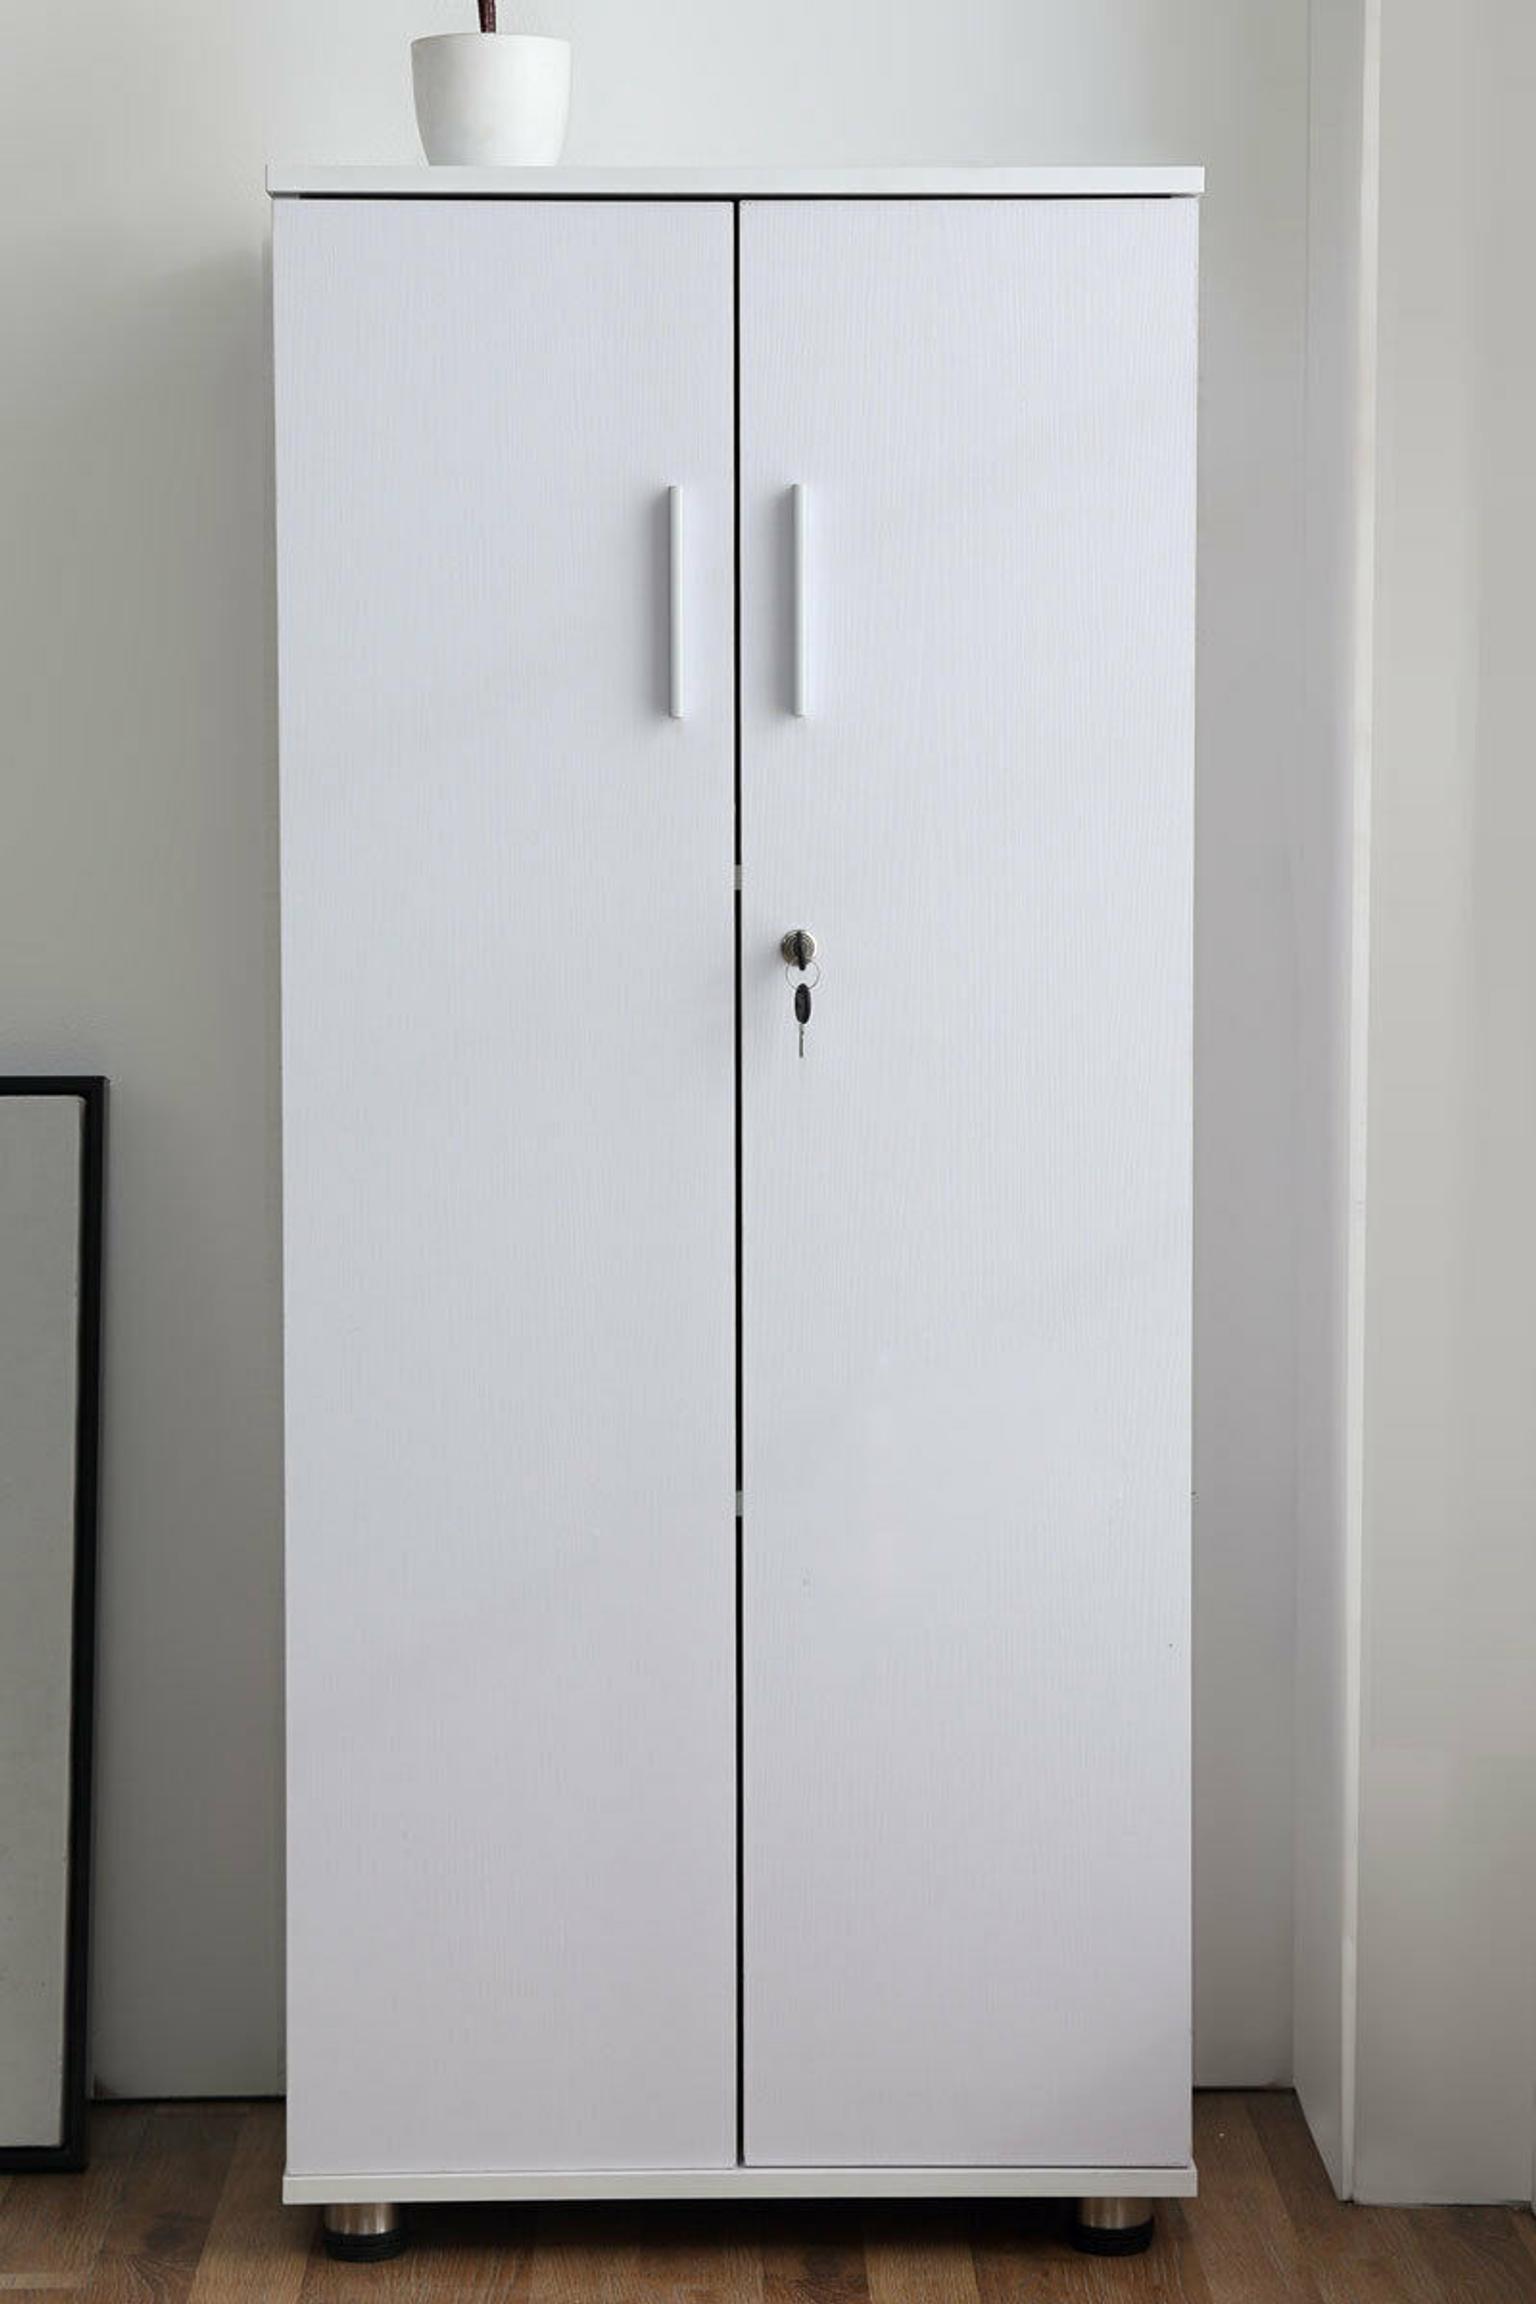 3 Shelf Cabinet Cupboard Storage Lockable In Ol12 Rochdale Fur 62